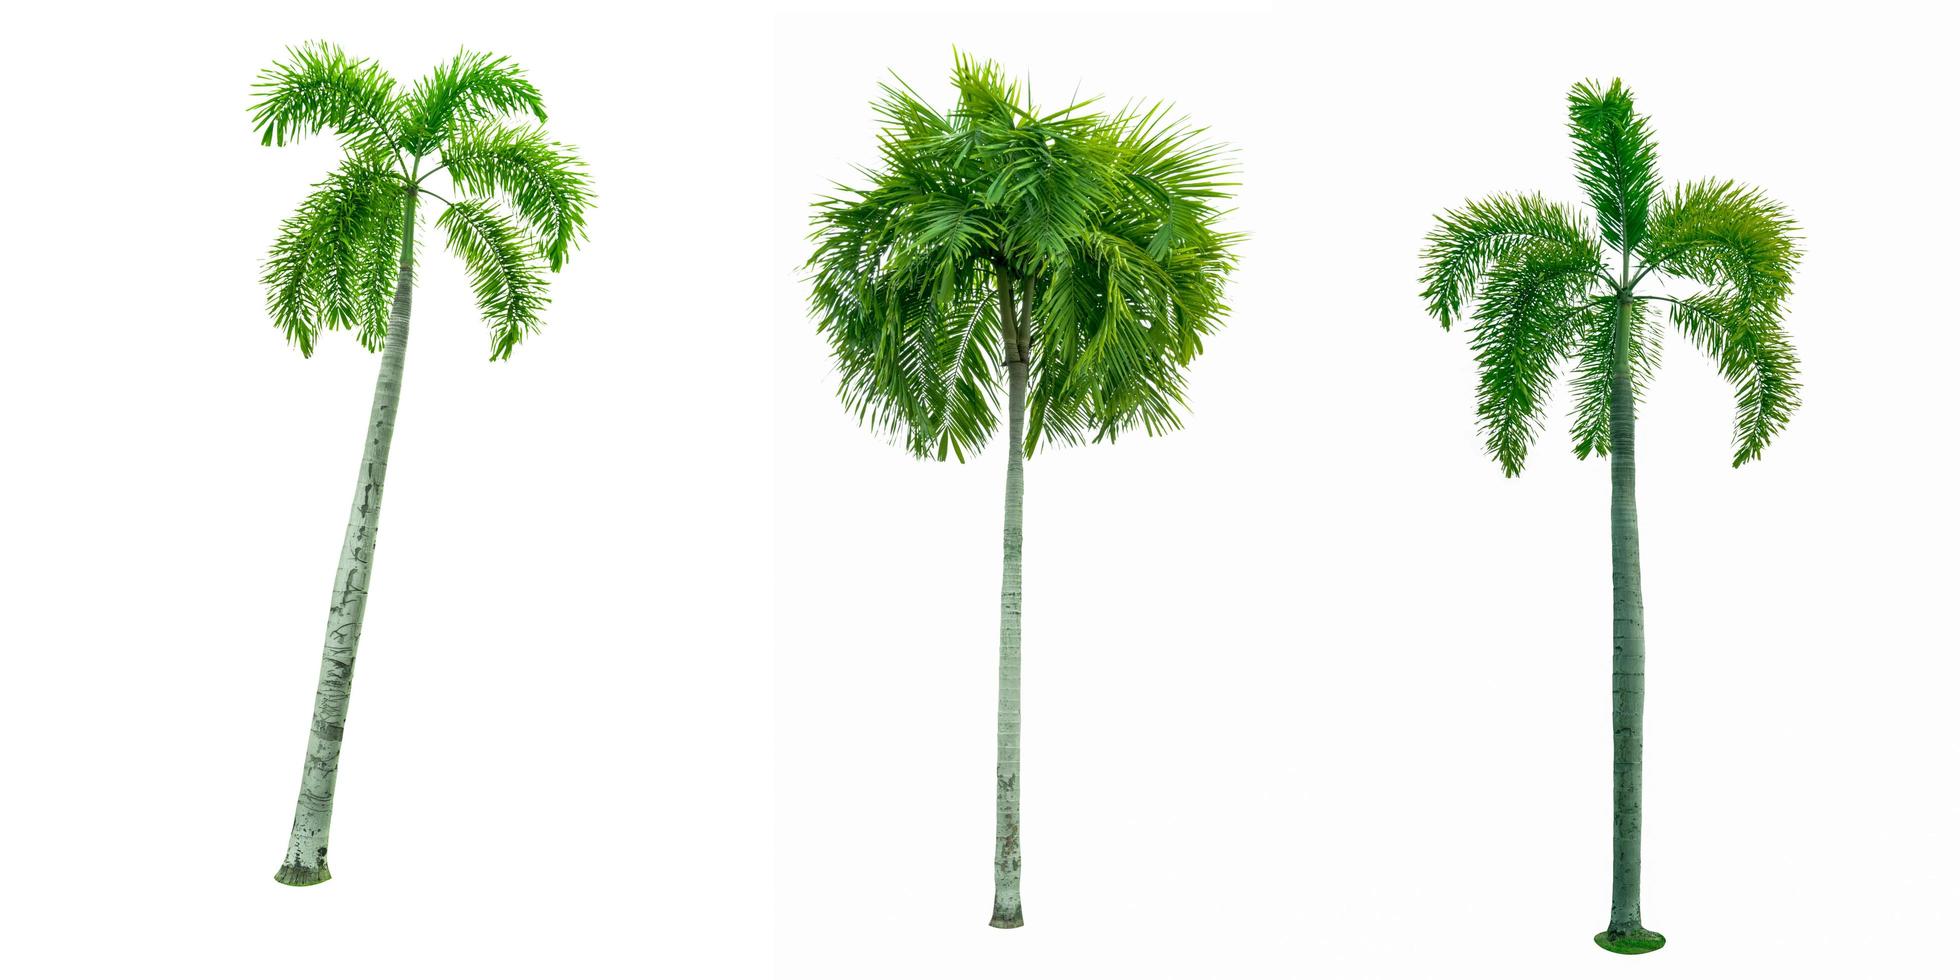 palmier de manille, palmier de noël veitchia merrillii isolé sur fond blanc. utilisé pour la publicité de l'architecture décorative. concept d'été et de plage. photo